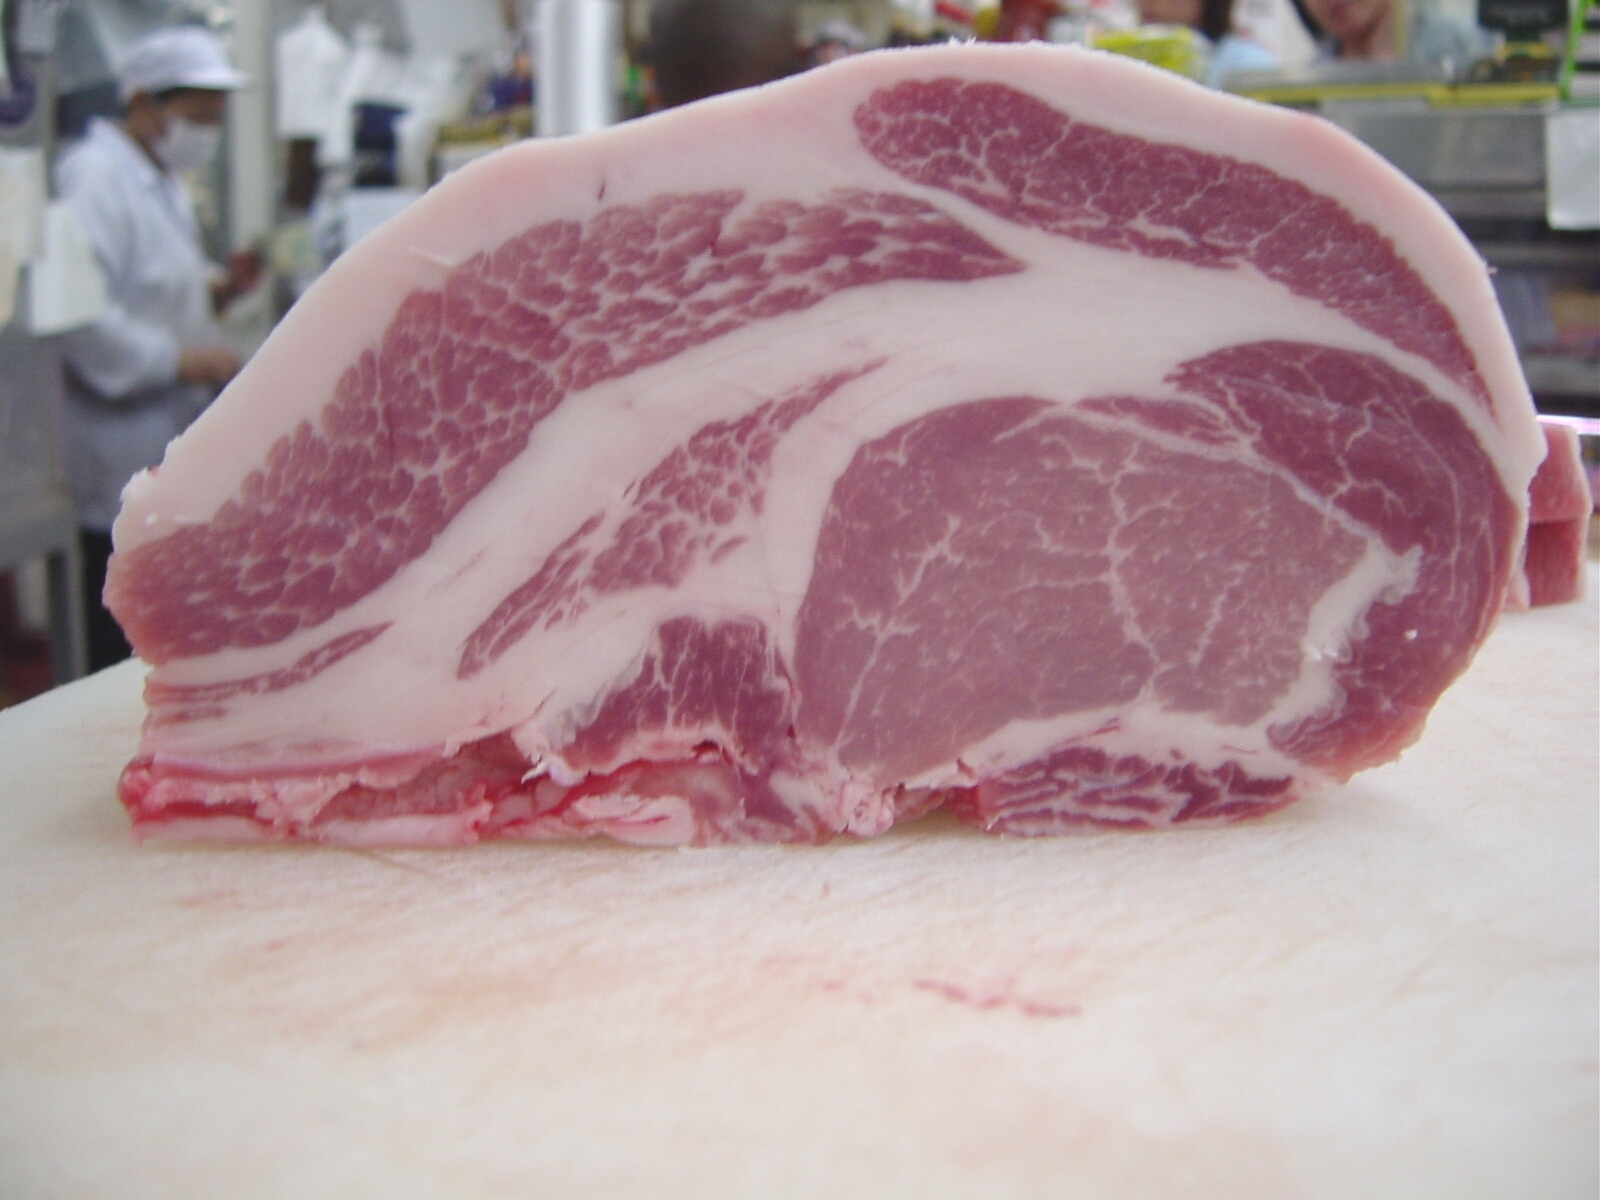 上級の豚肉の中からさらにほんの一握りの最上級グレードの豚肉だけを、プライドを持って「最高・１番・最上級」と言う意味をこめて「富士豚」として商標登録いたしました（登録商標4623558号）。